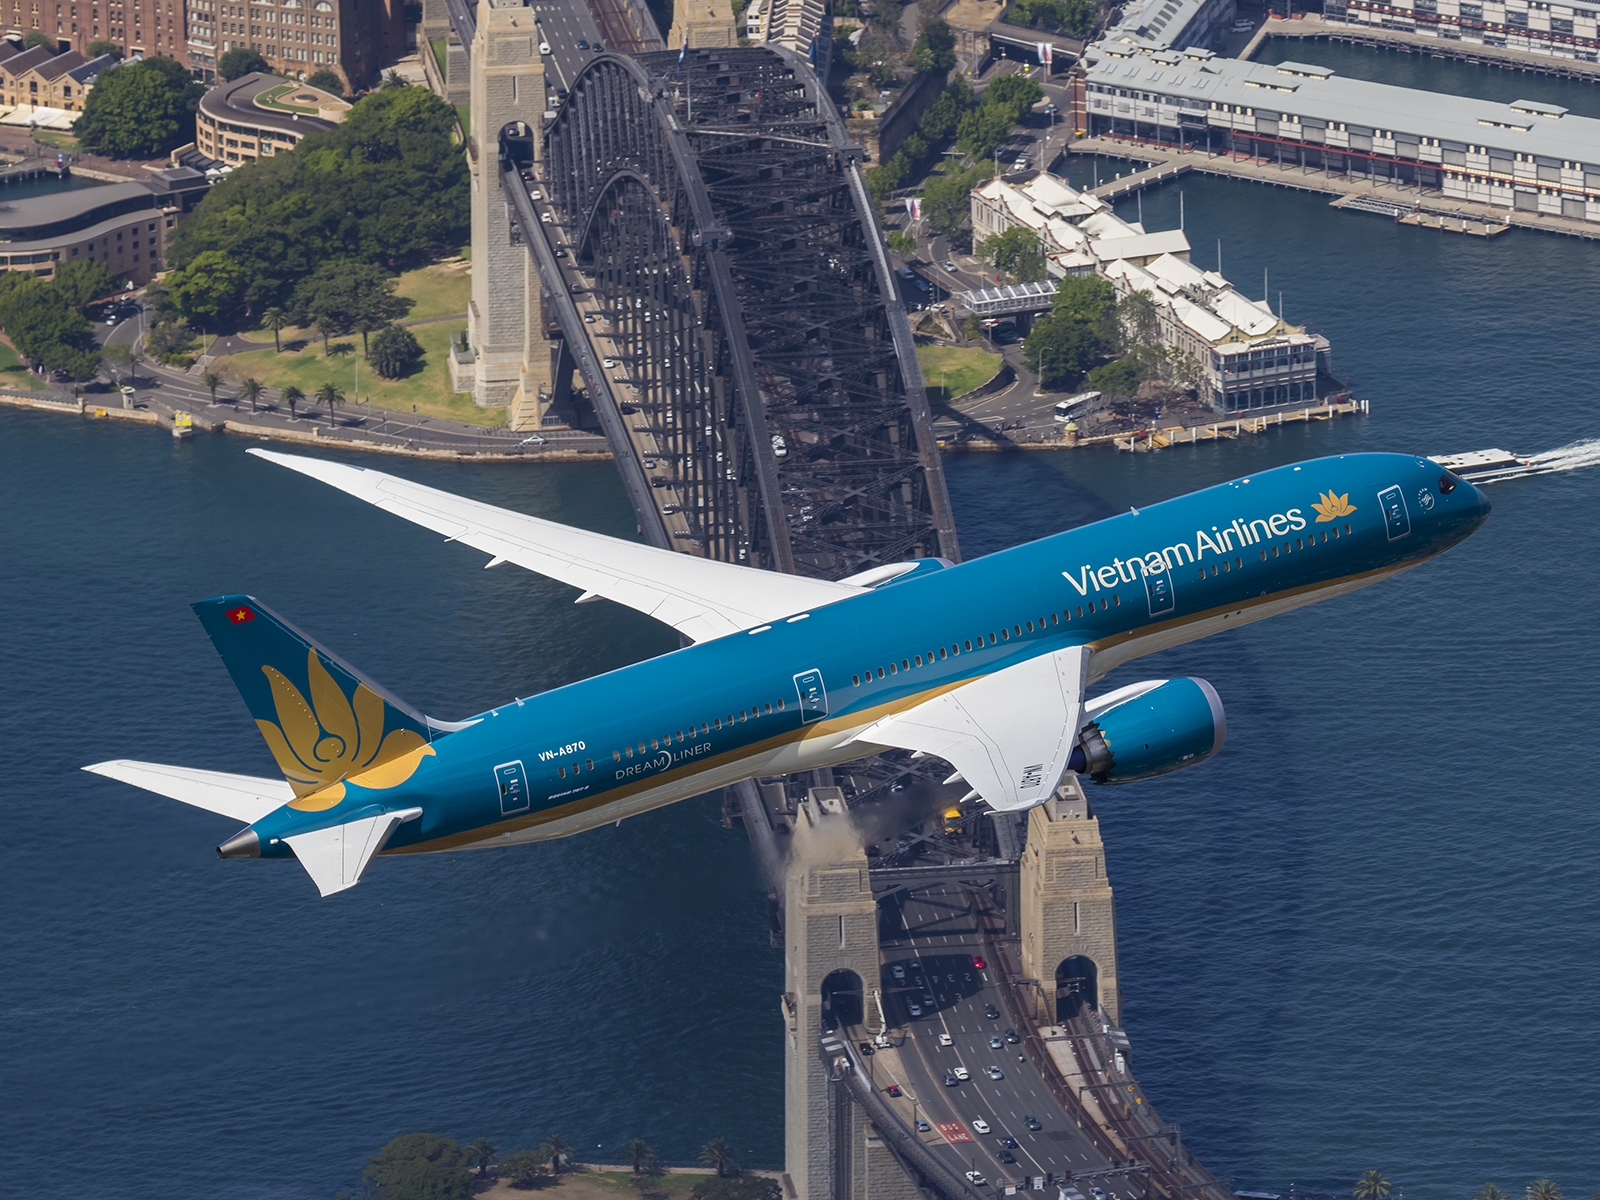 Được thưởng thức bức ảnh máy bay Boeing 787 thuộc Vietnam Airlines ở Úc. Hãy đến và khám phá những điều kỳ diệu mà máy bay mang lại. Bức ảnh này sẽ khiến bạn nhớ mãi những trải nghiệm tuyệt vời trên đường bay.